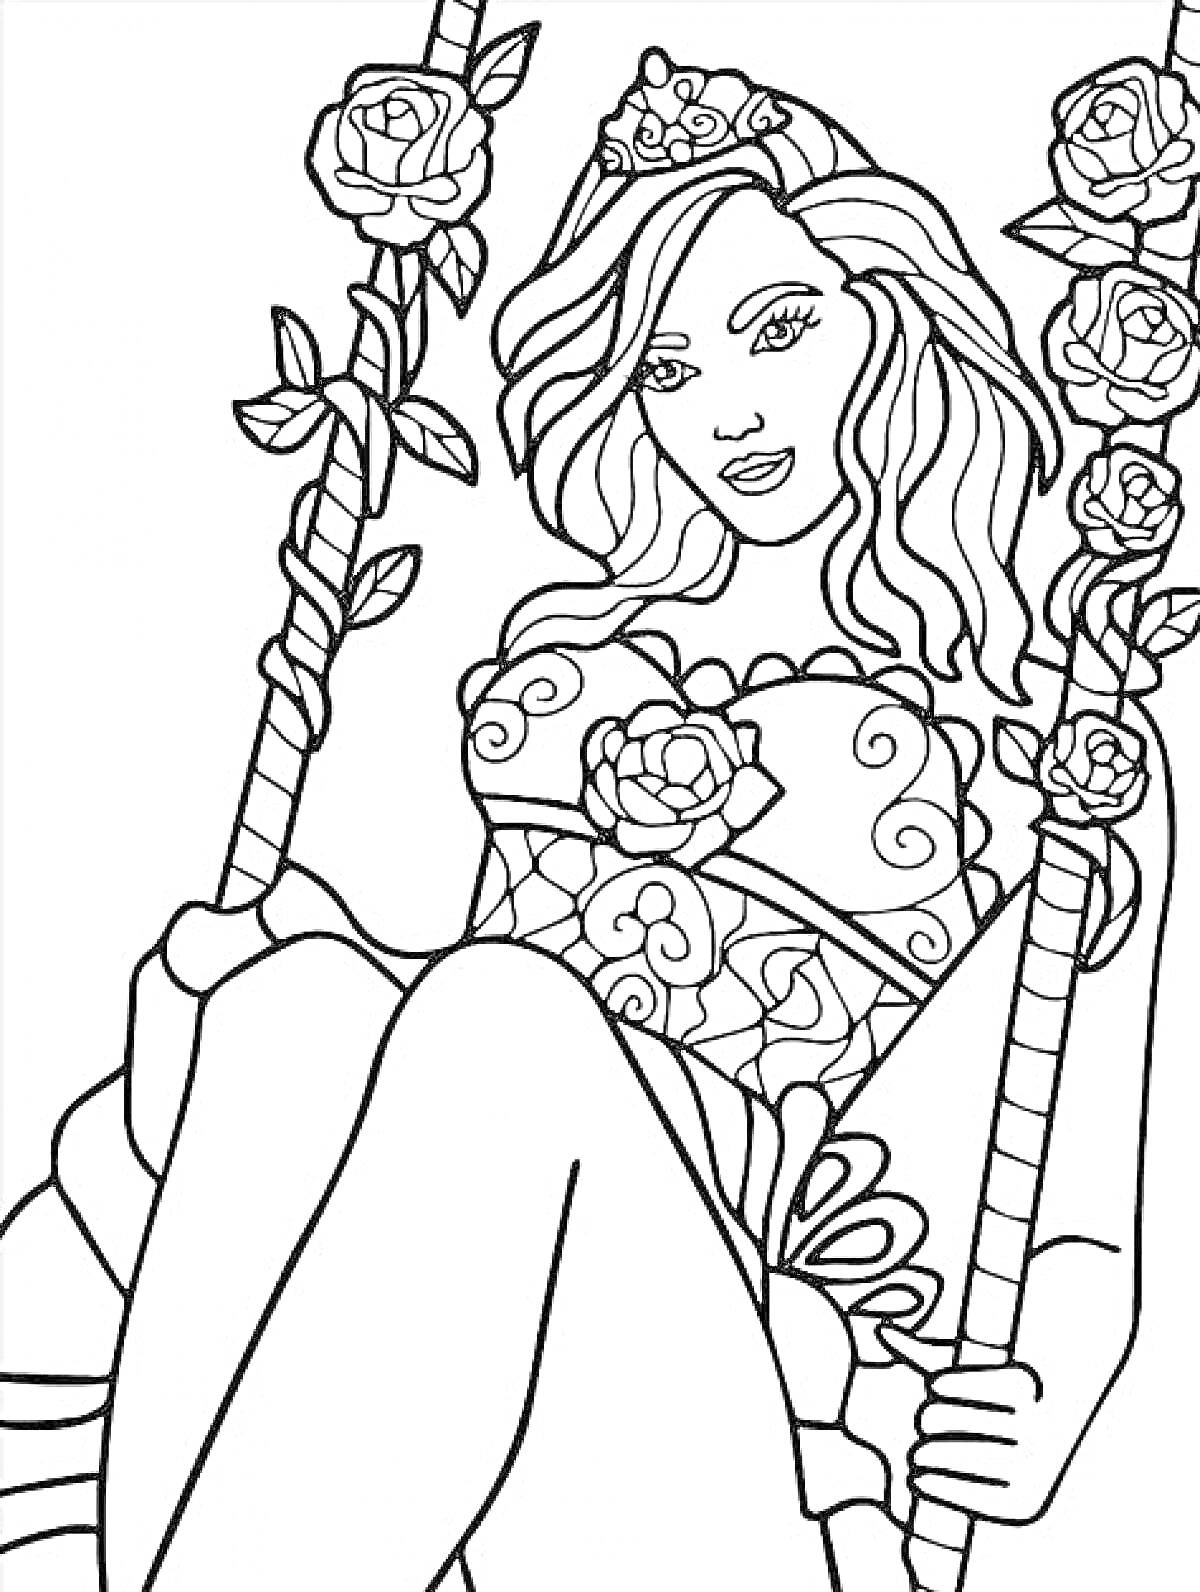 Раскраска Женщина на качелях с цветами и короной